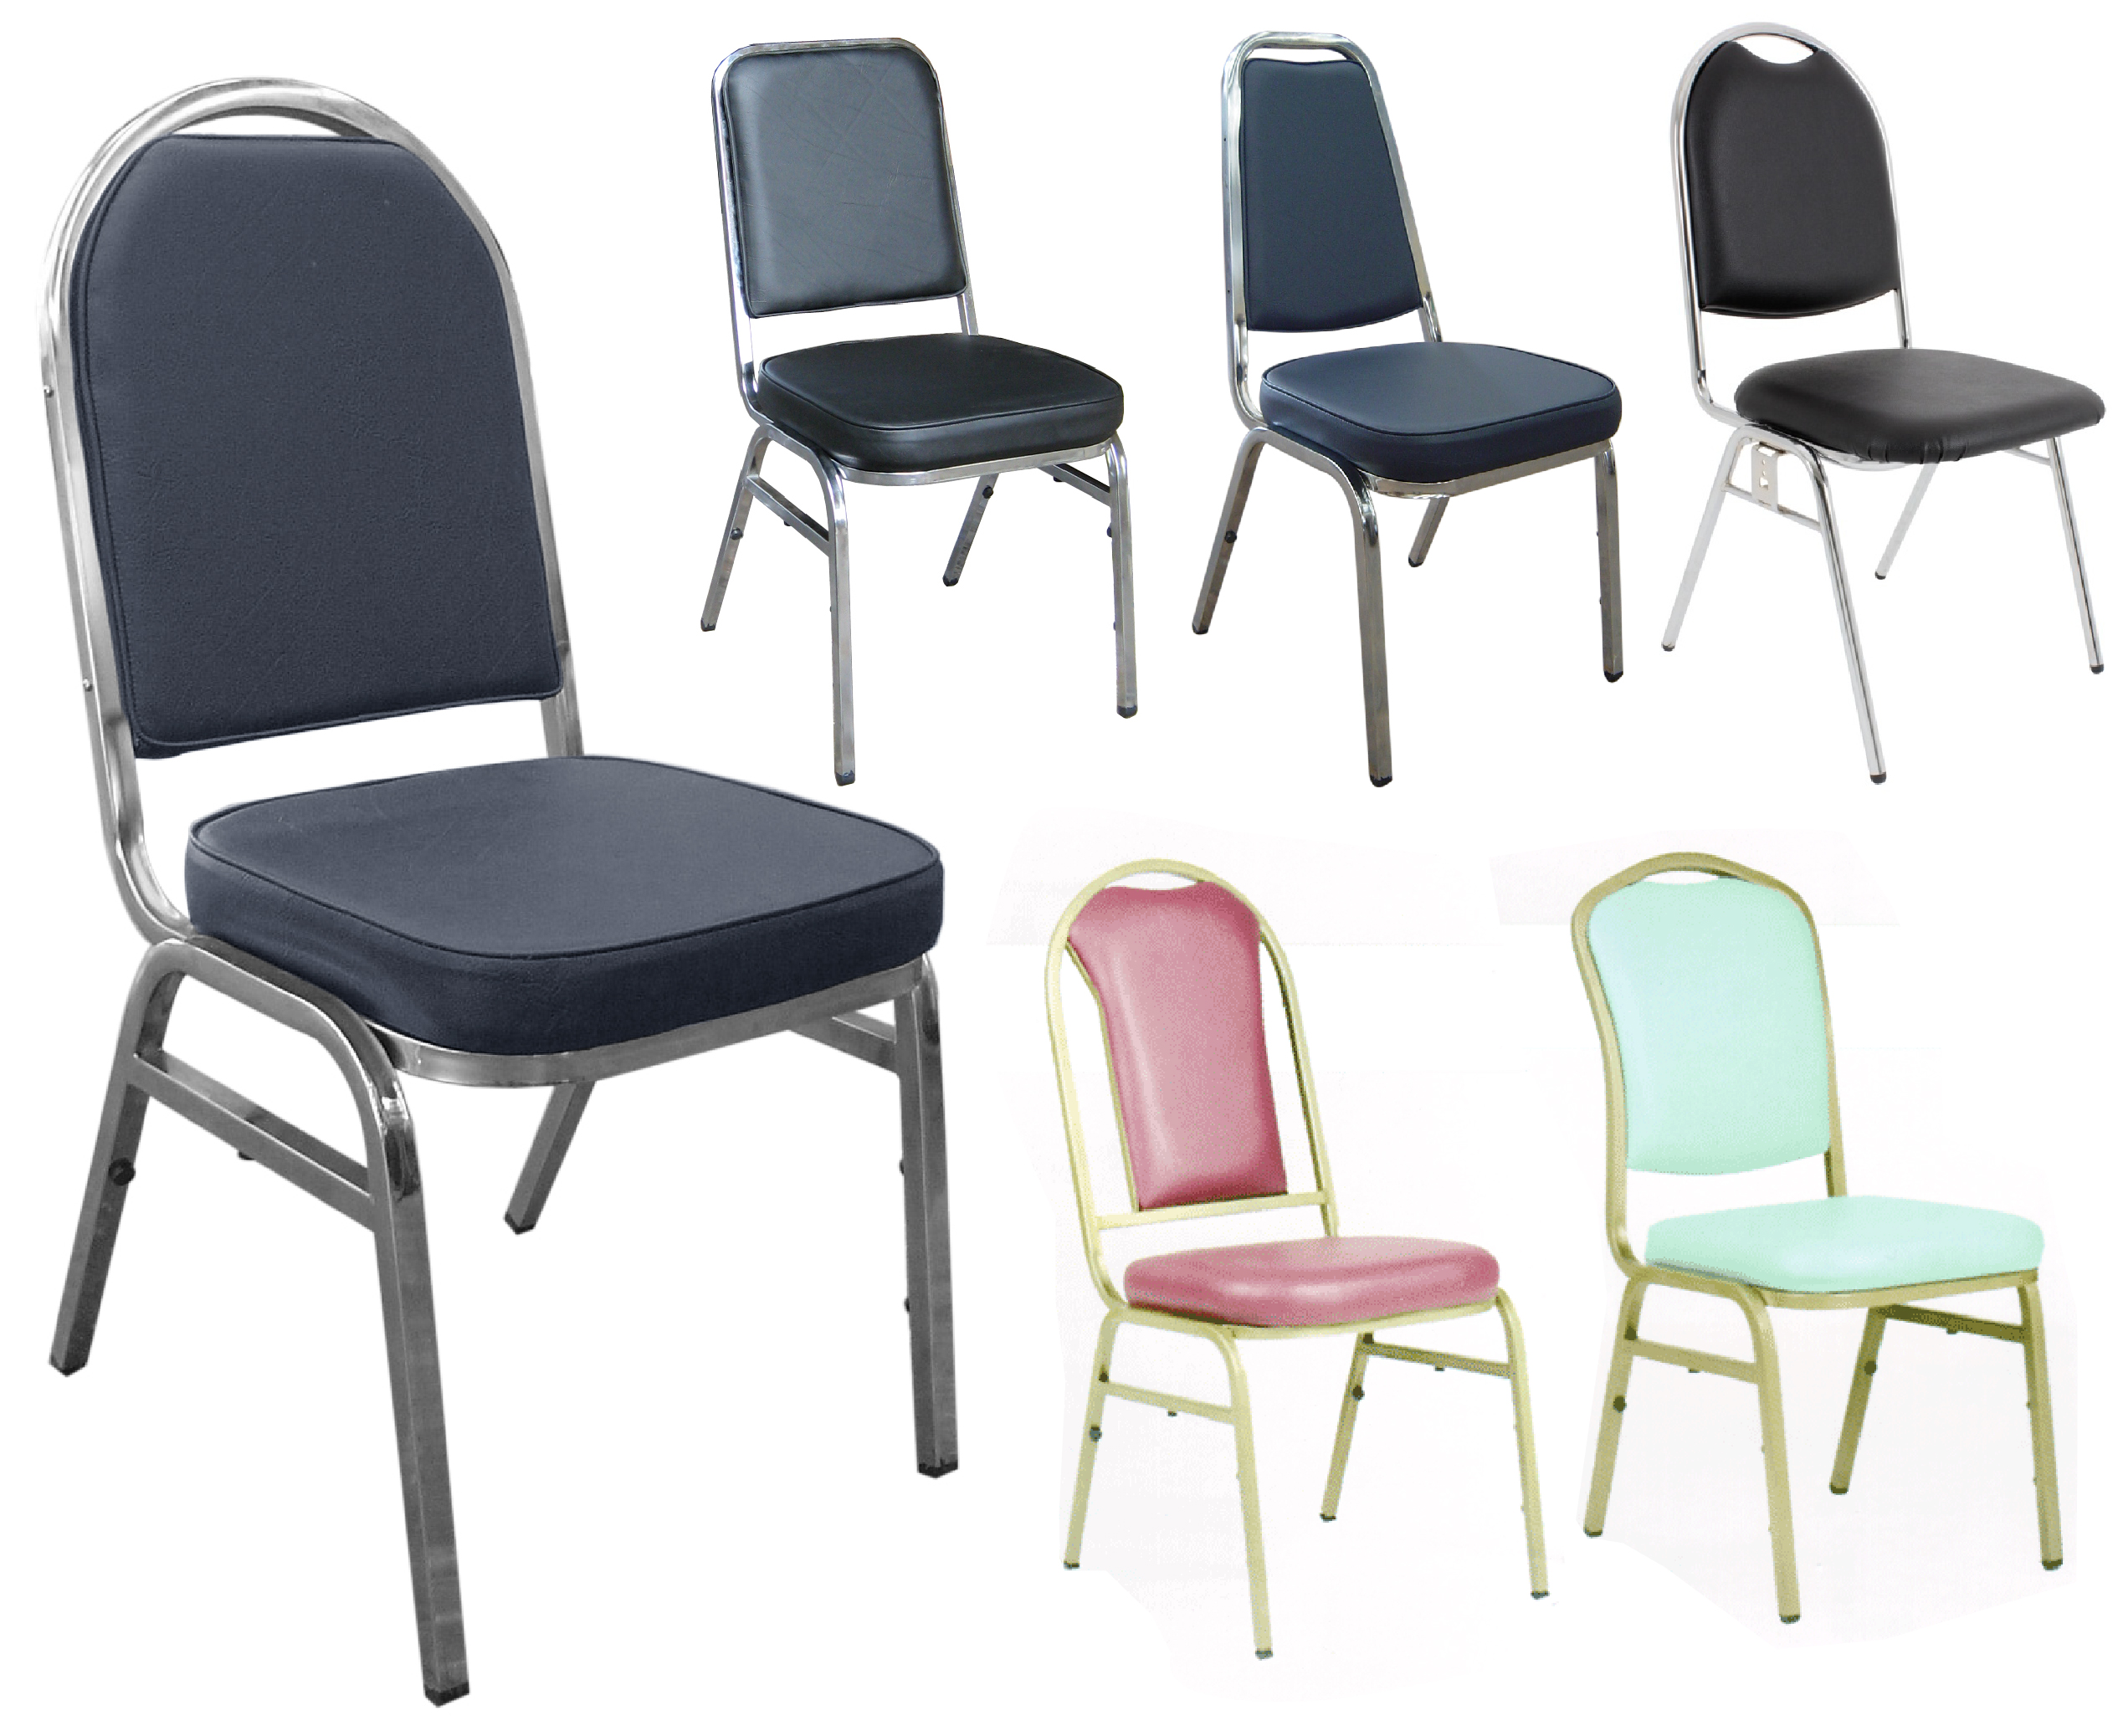 เก้าอี้อเนกประสงค์ เก้าอี้จัดเลี้ยง ที่นั่งบุฟองน้ำหนังเทียม Multipurpose Leather Chairs